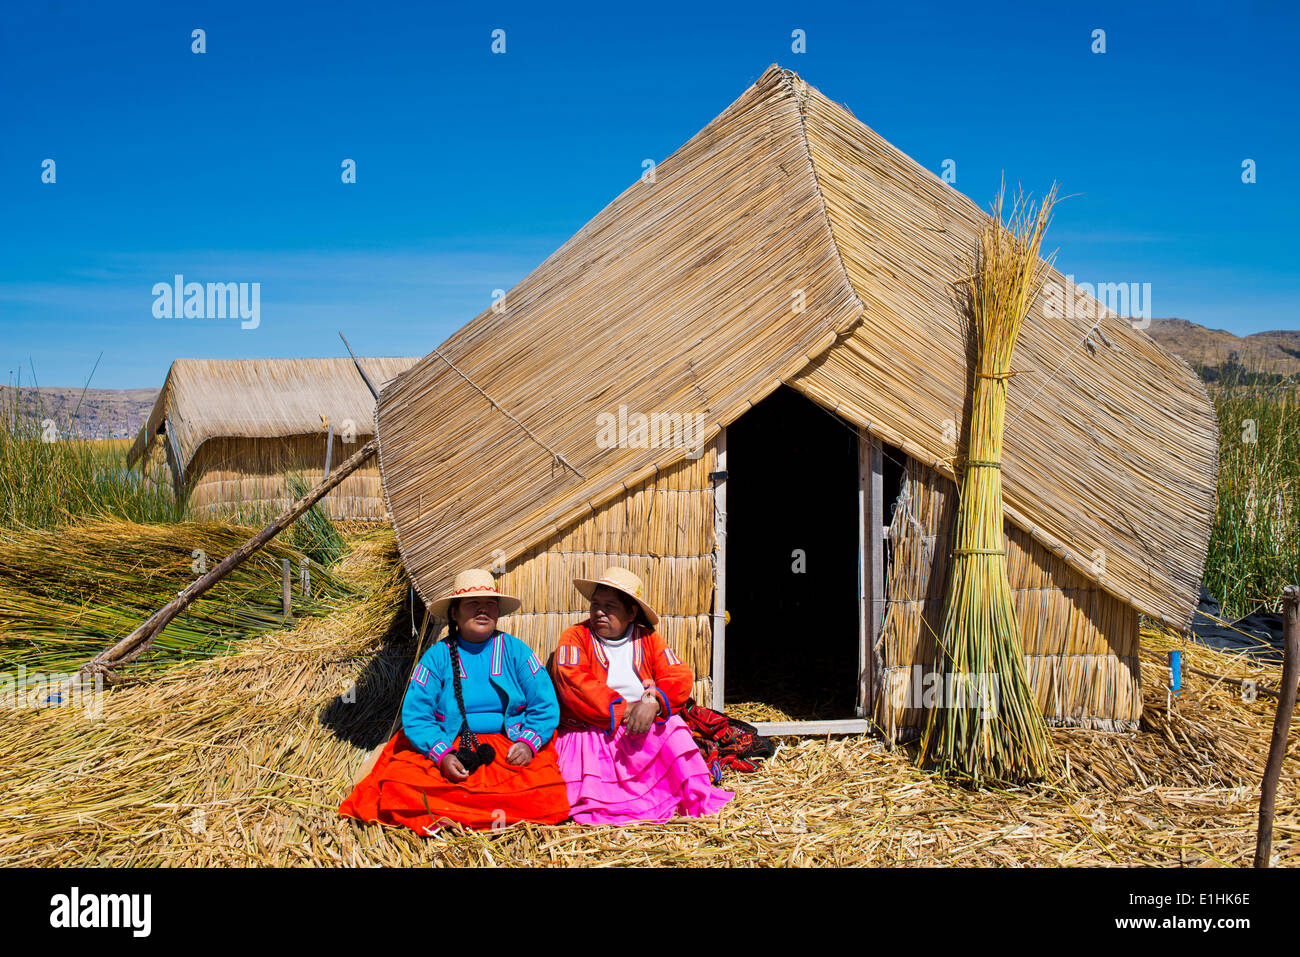 Zwei Frauen der Uro-Indianer tragen traditionelle Kleidung sitzt vor einem Reed-Hütte gemacht schwimmenden Inseln von Totora-Schilf Stockfoto